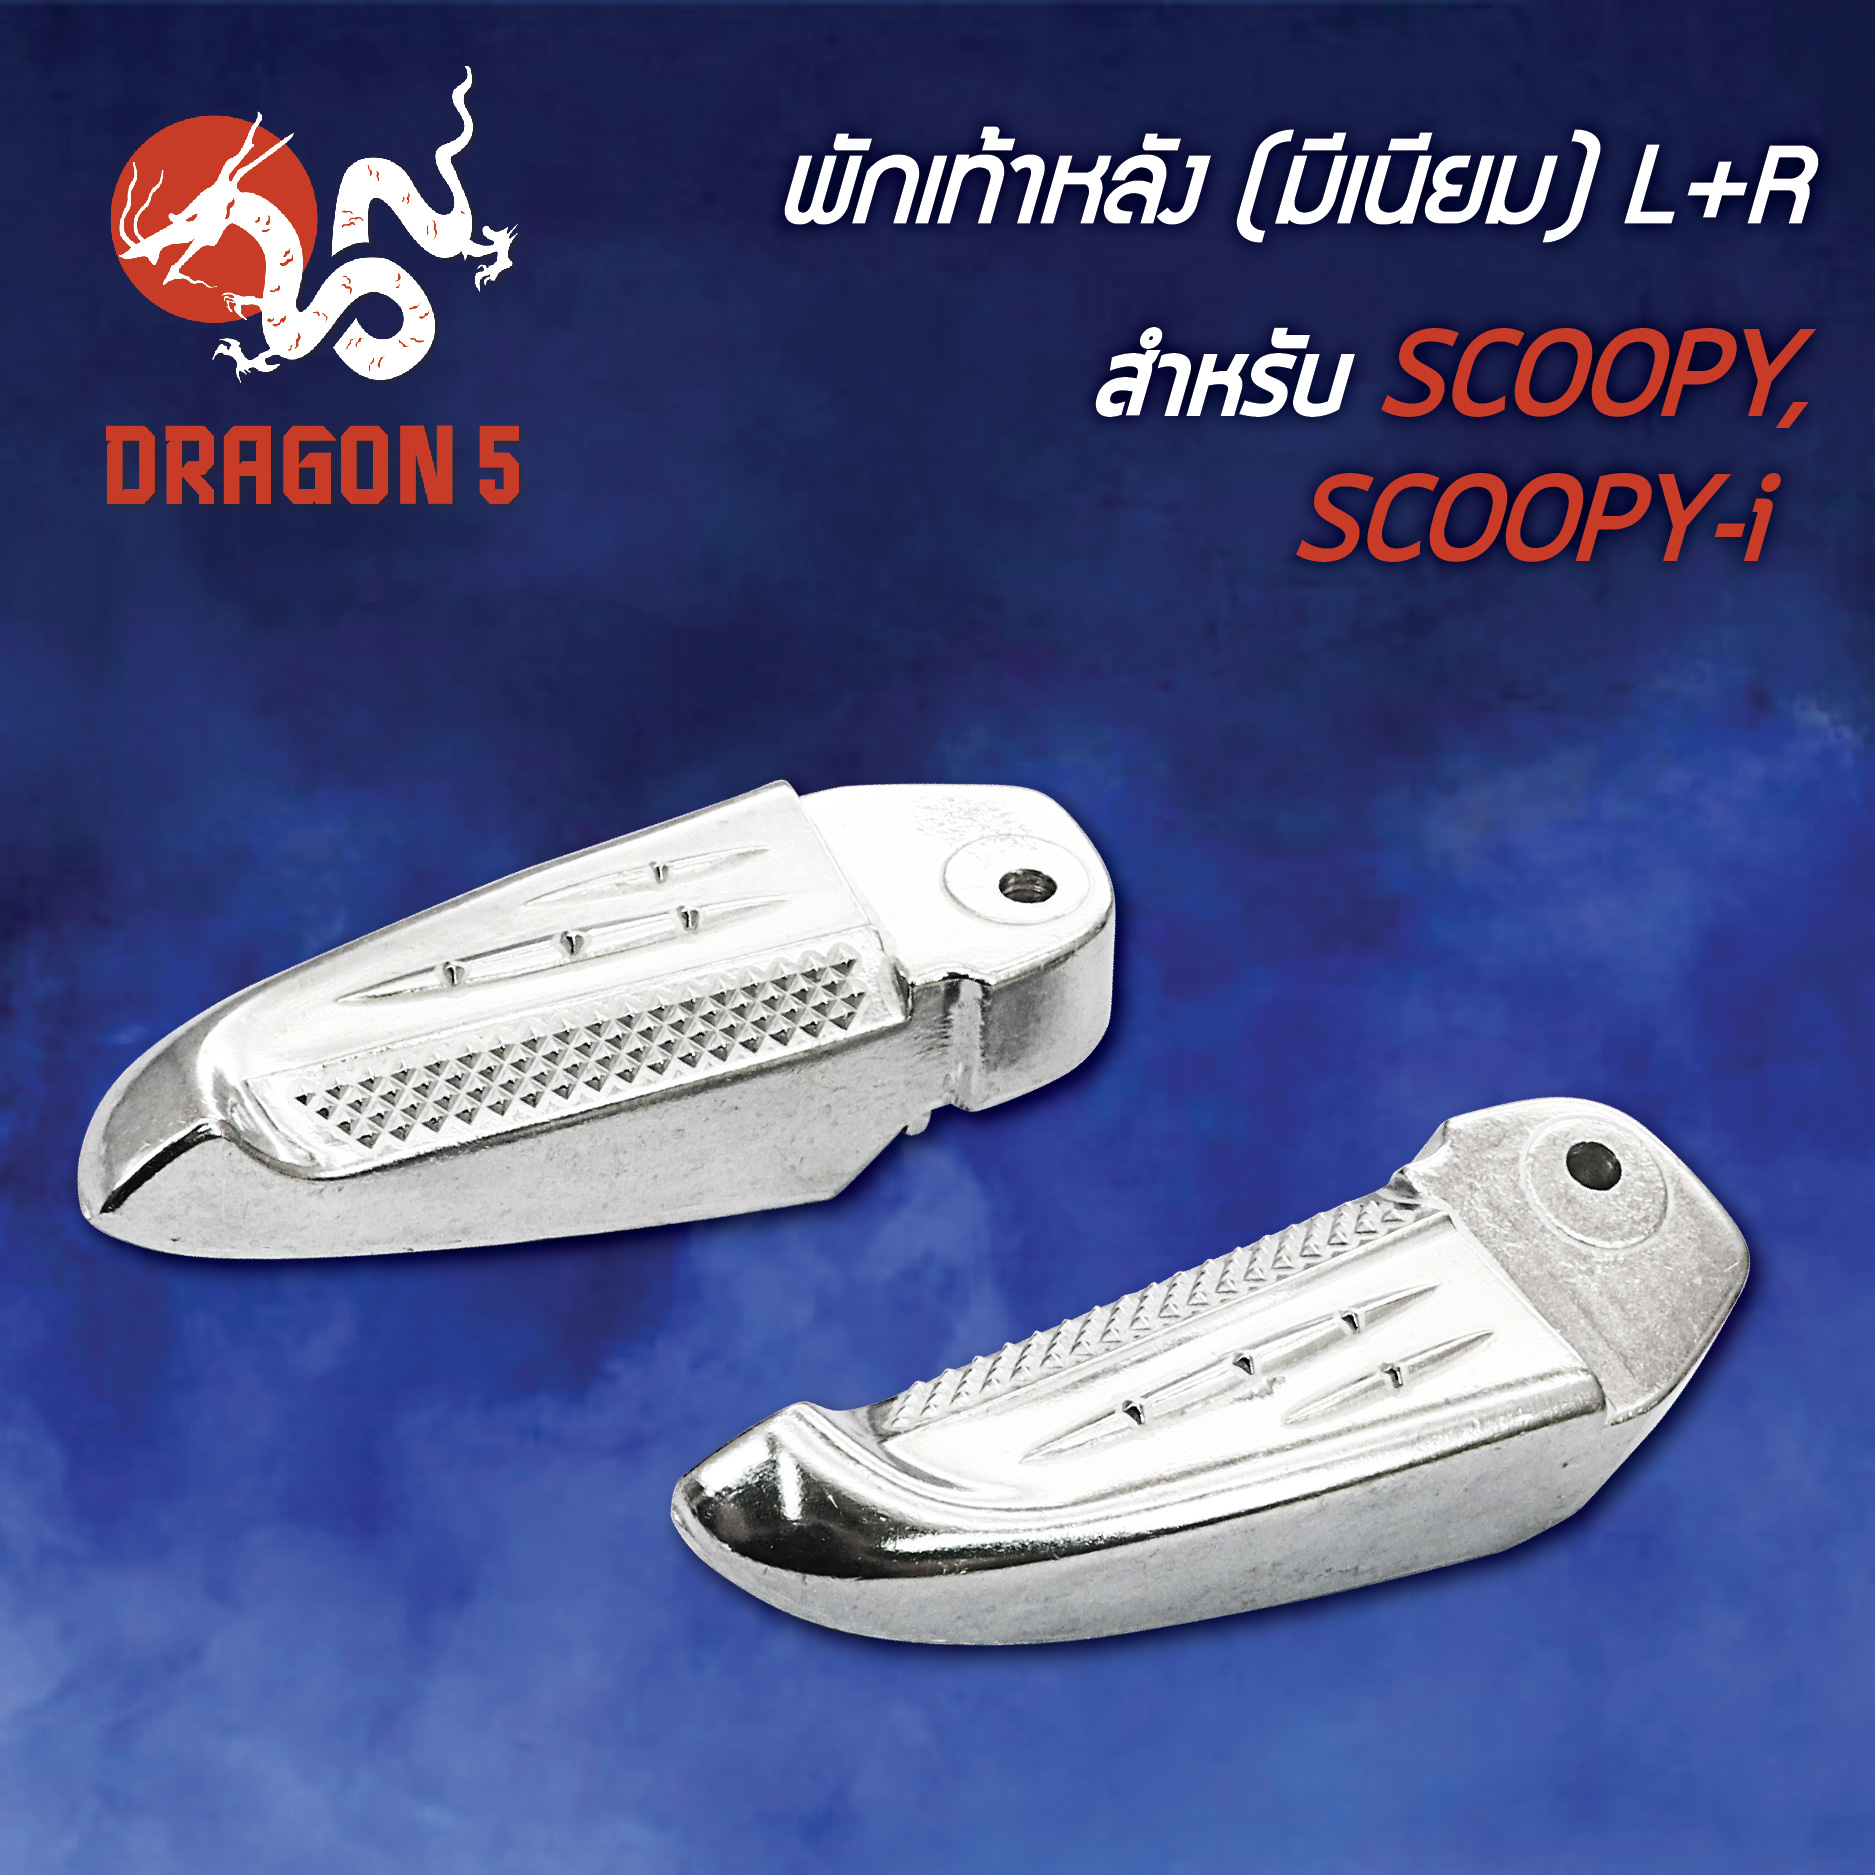 พักเท้าหลังSCOOPY,SCOOPY-I,สกู๊ปปี้ไอ (มีเนียม) พร้อมอุปกรณ์ L+R 4320-079-00 HMA